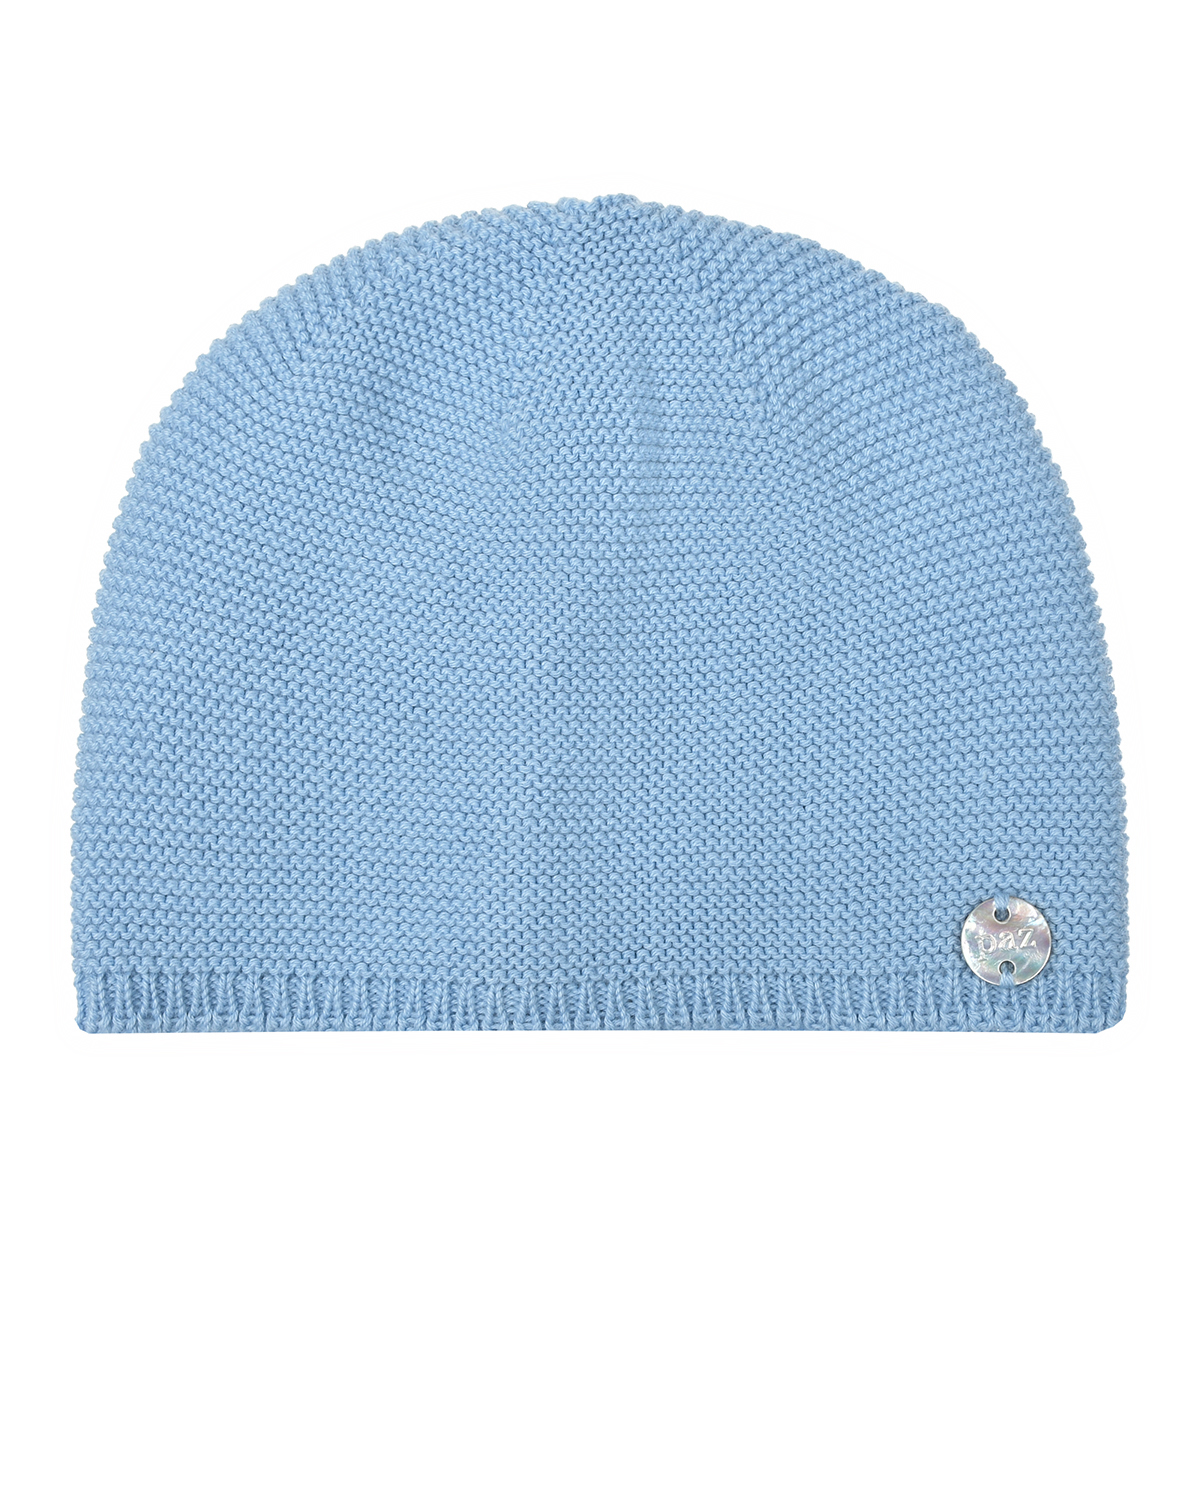 Голубая вязаная шапка Paz Rodriguez, размер 56, цвет голубой